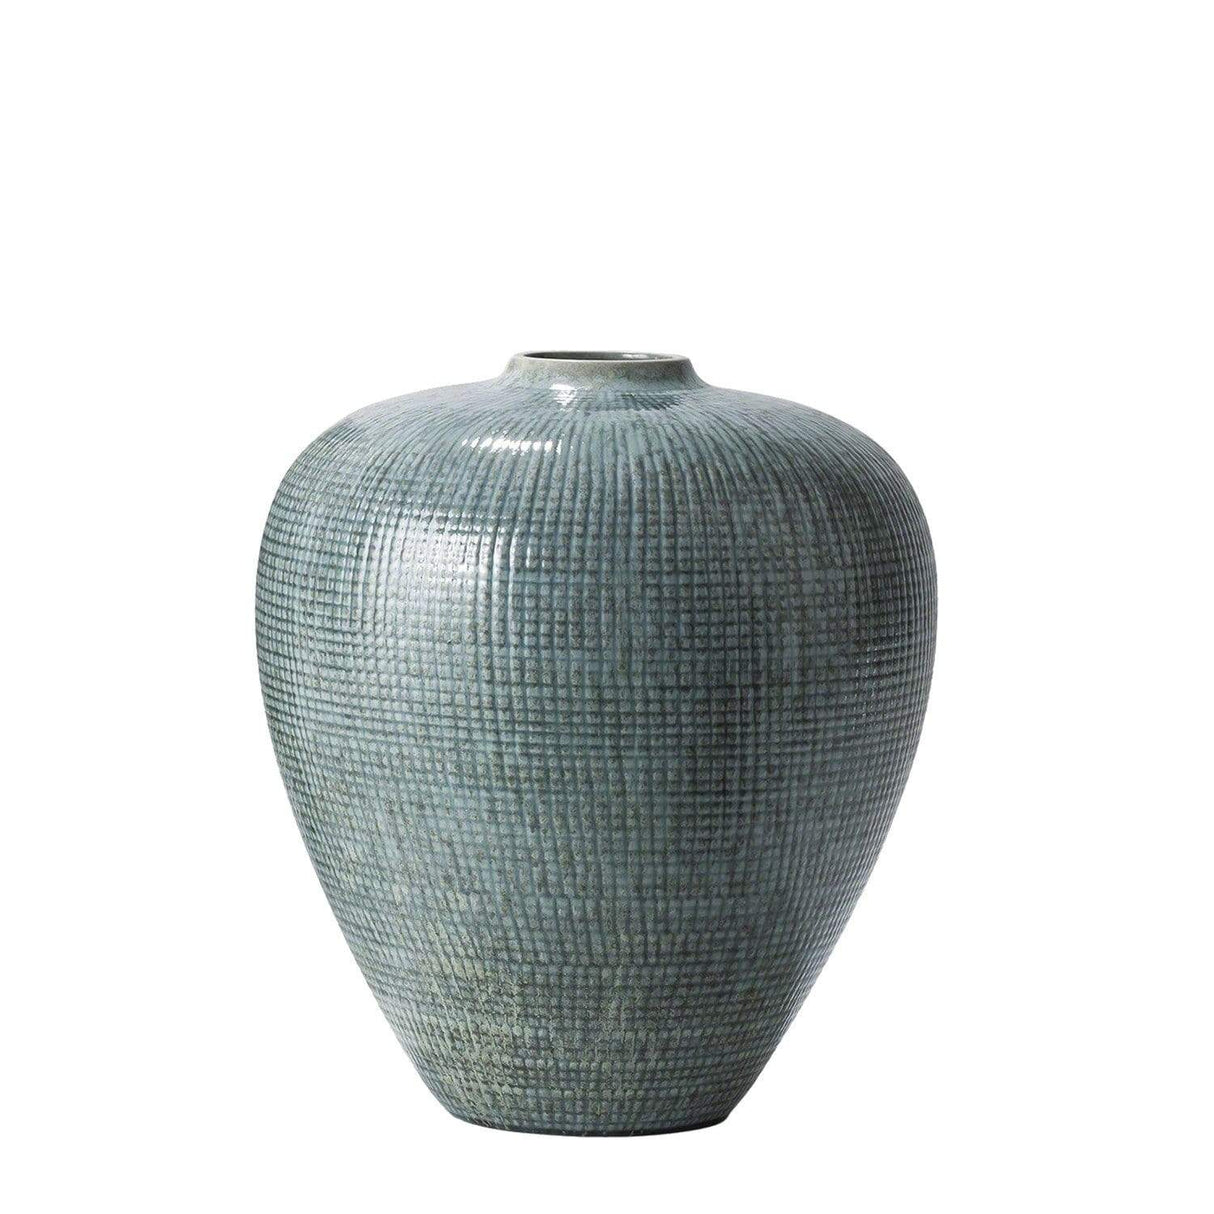 Studio A Check Bulbous Vase - Reactive Silver Blue Decor studio-a-7.10116